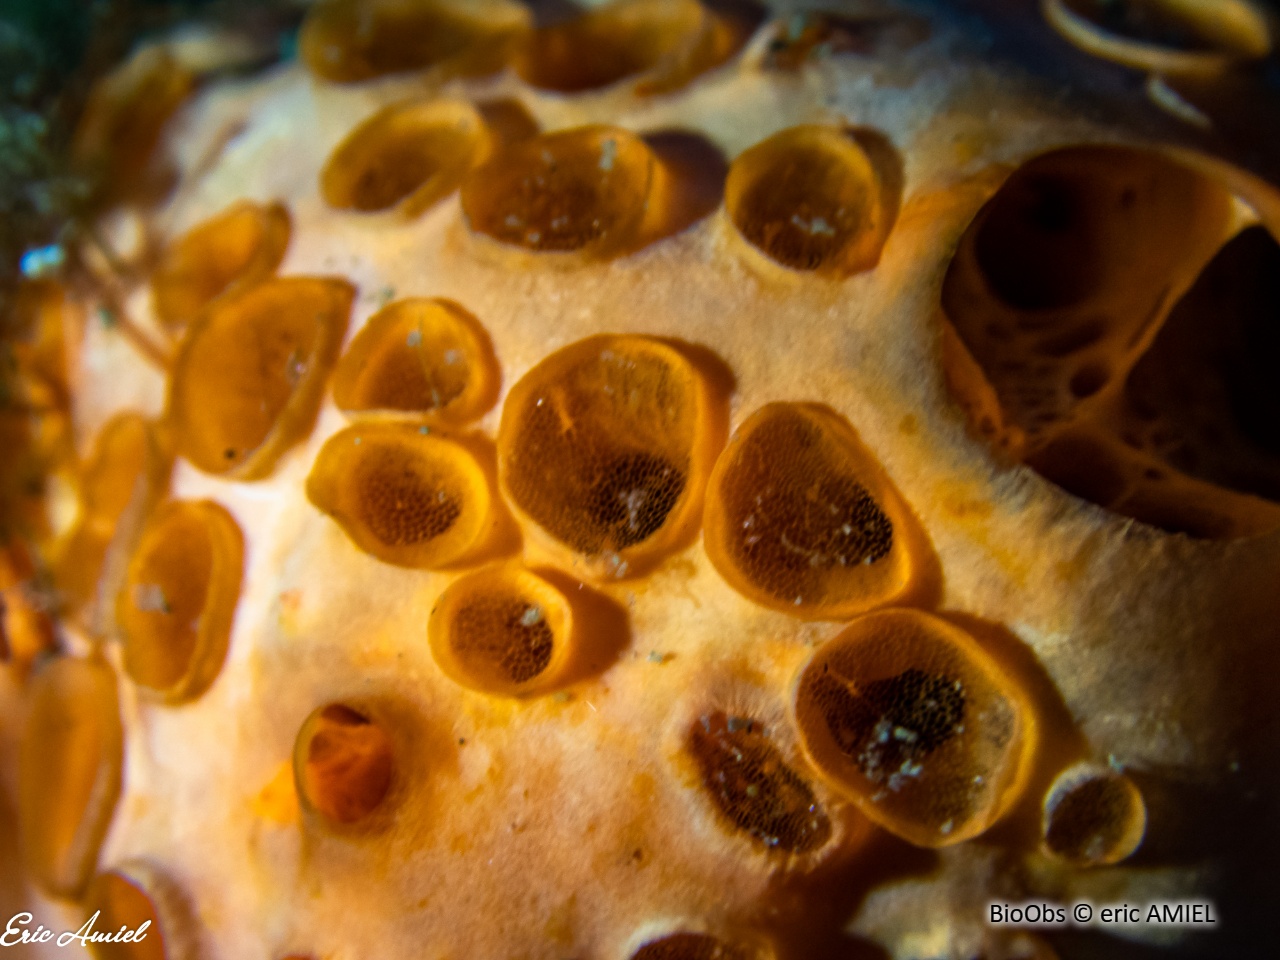 Eponge à cratères - Hemimycale columella - eric AMIEL - BioObs